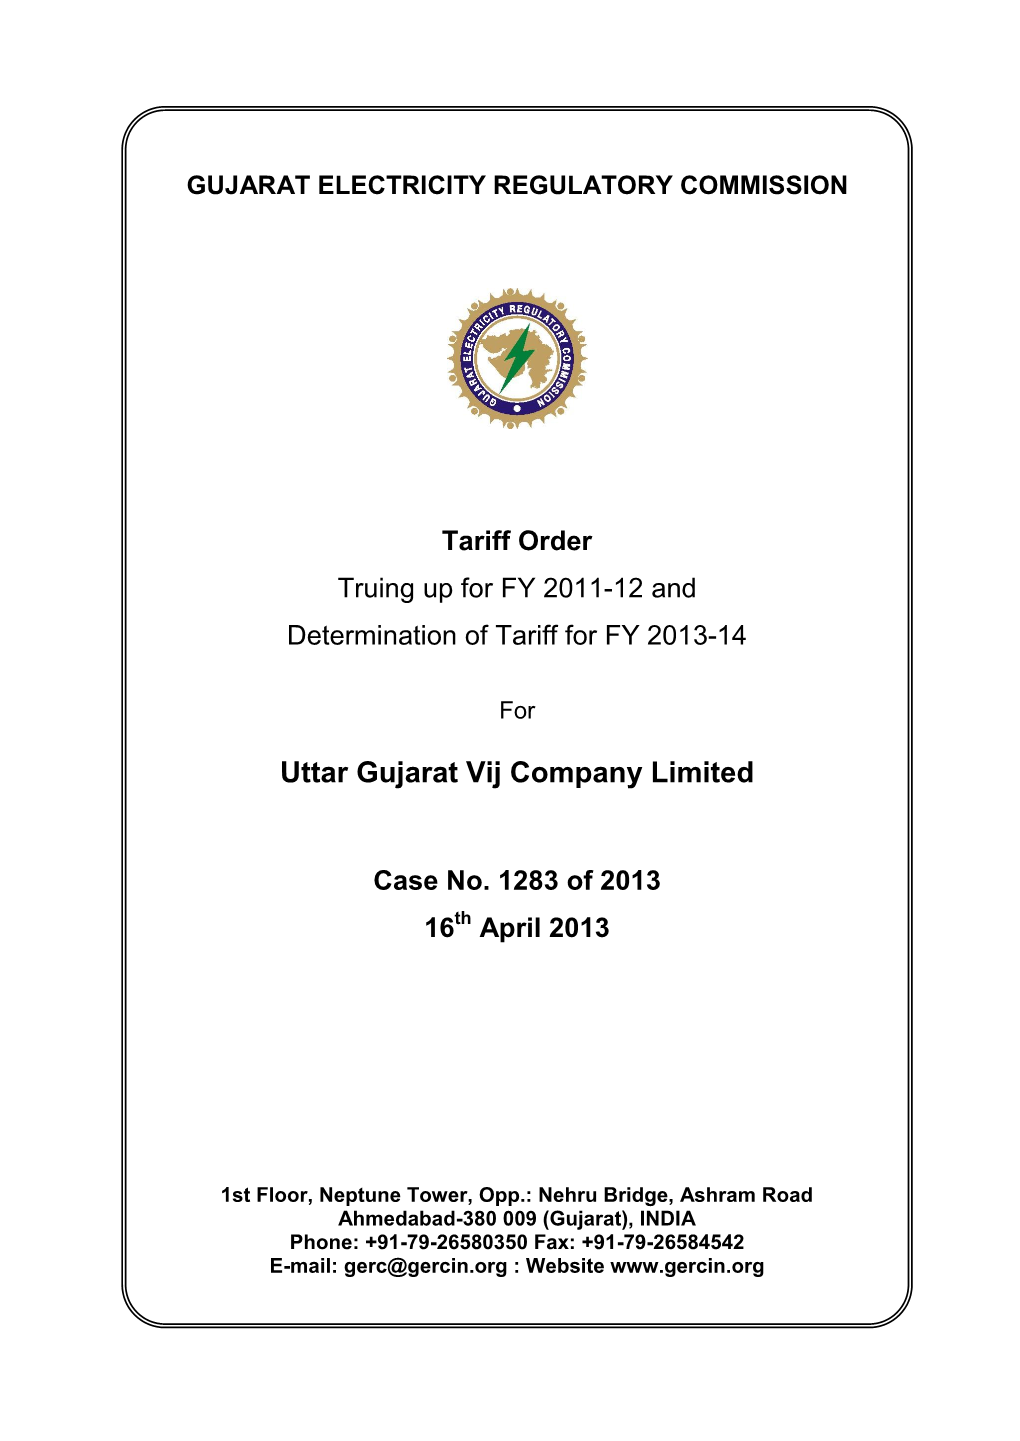 Uttar Gujarat Vij Company Limited